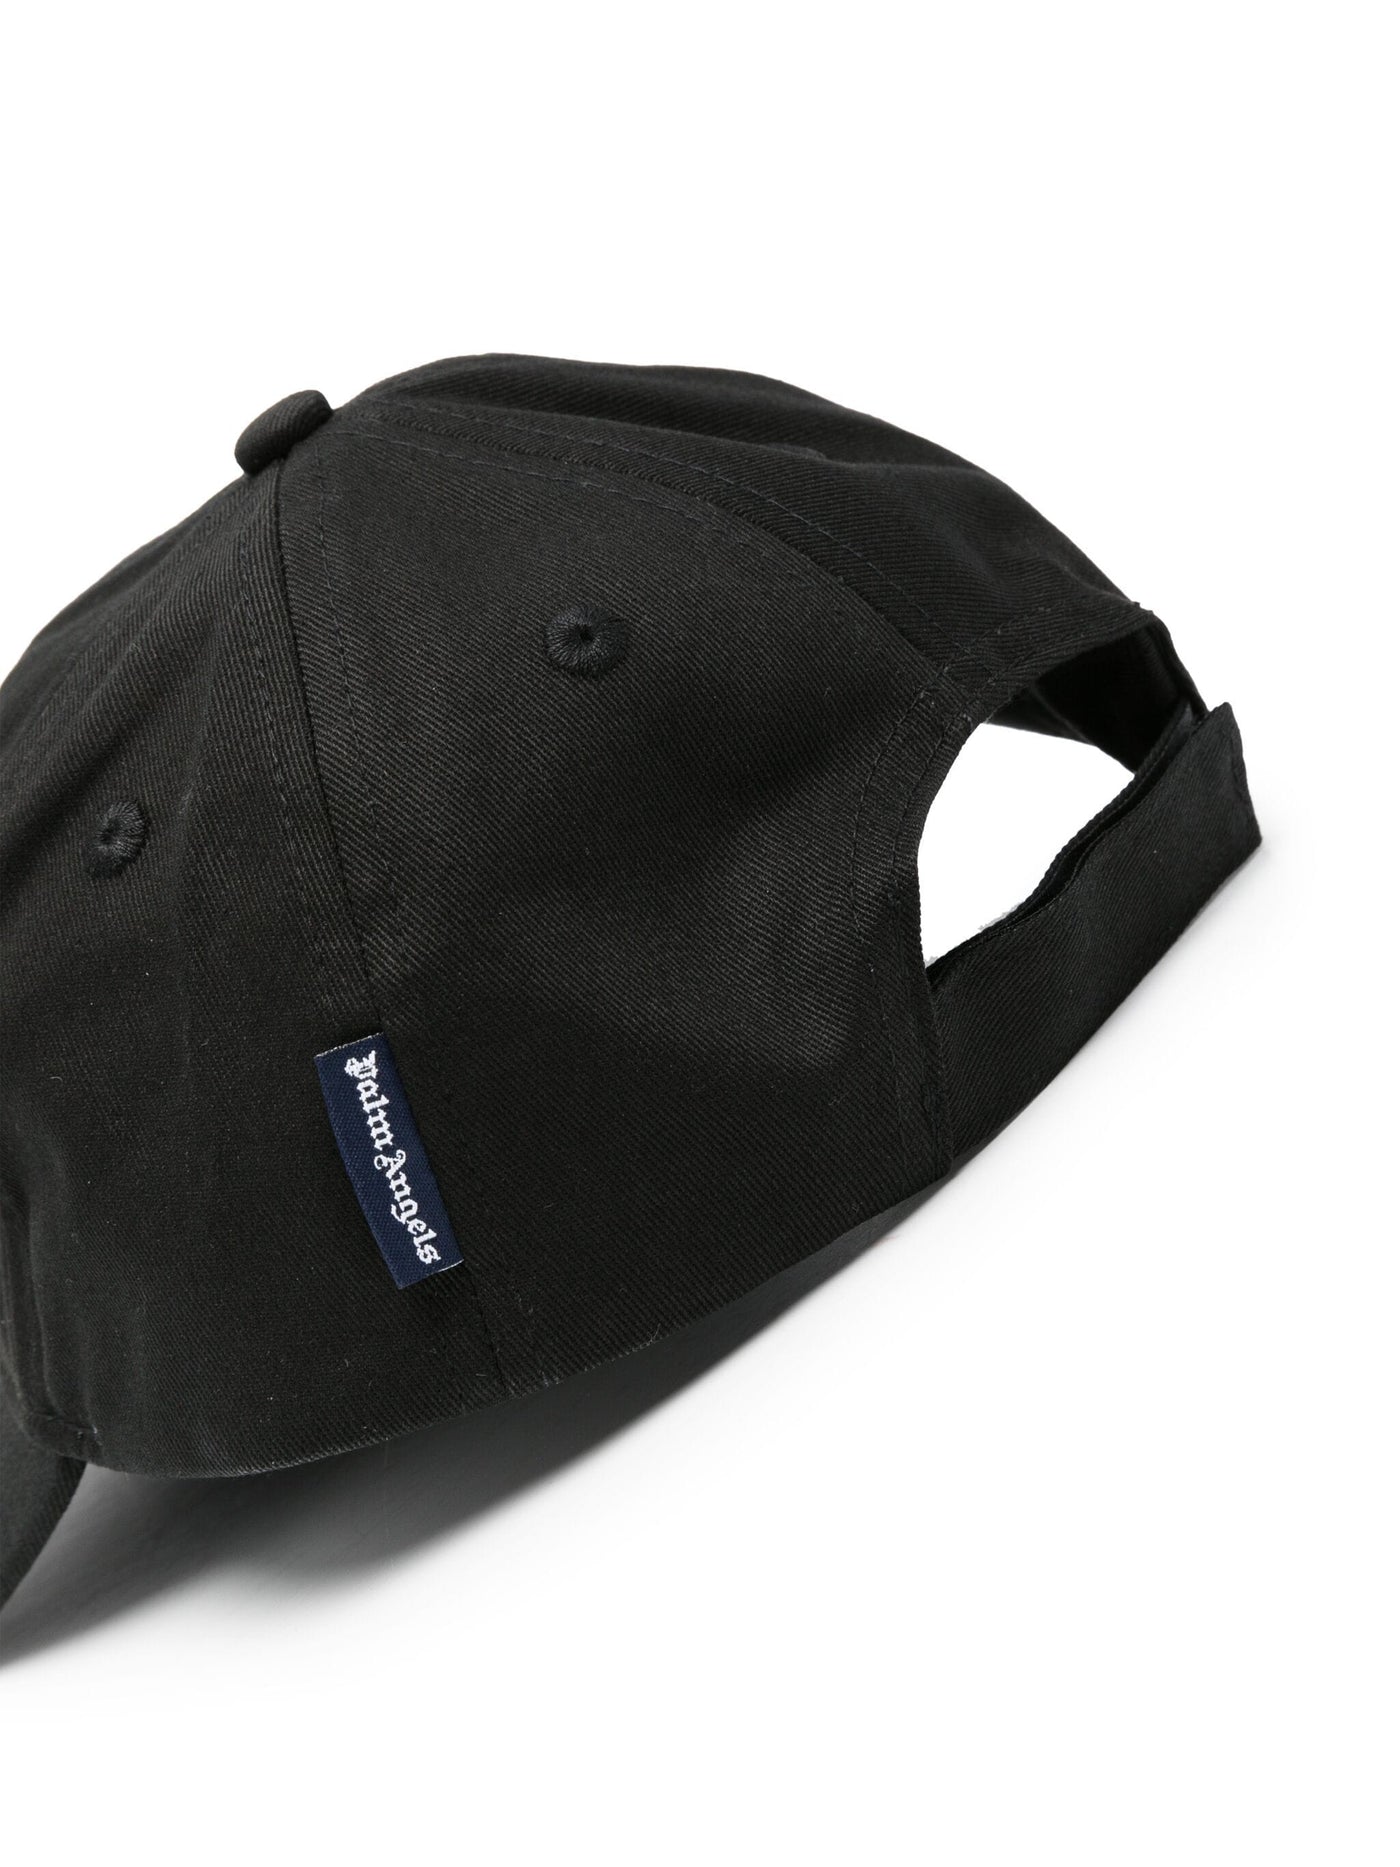 LOGO BASEBALL CAP BLACK WHITE قبعة 